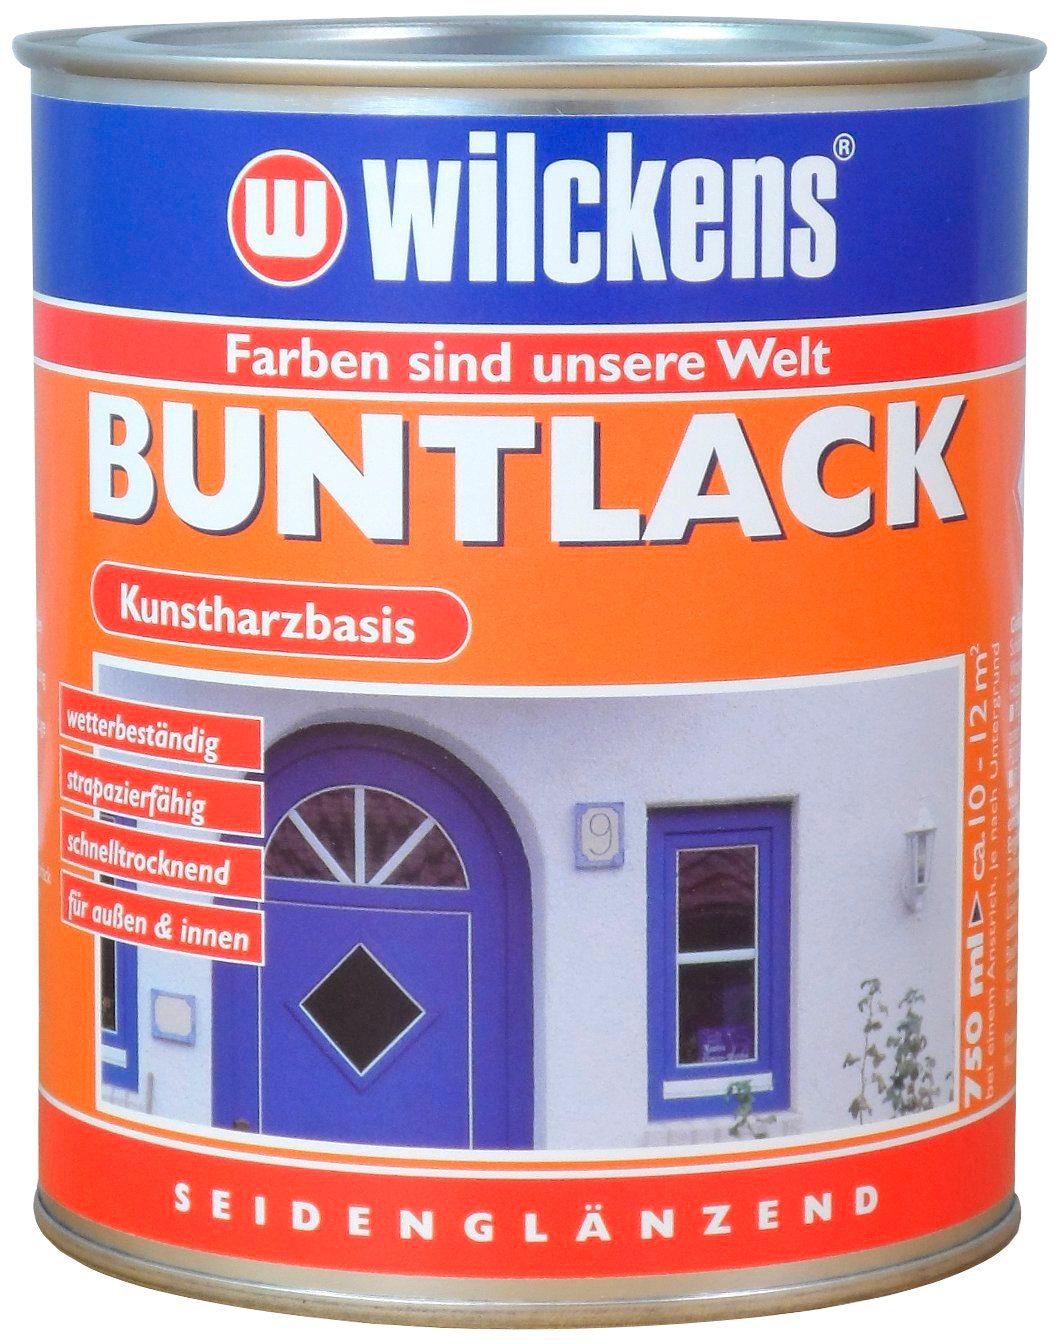 Buntlack Aromatenfreier Kunstharzlack Farben Kunstharz-Lack Wilckens seidenglänzend,